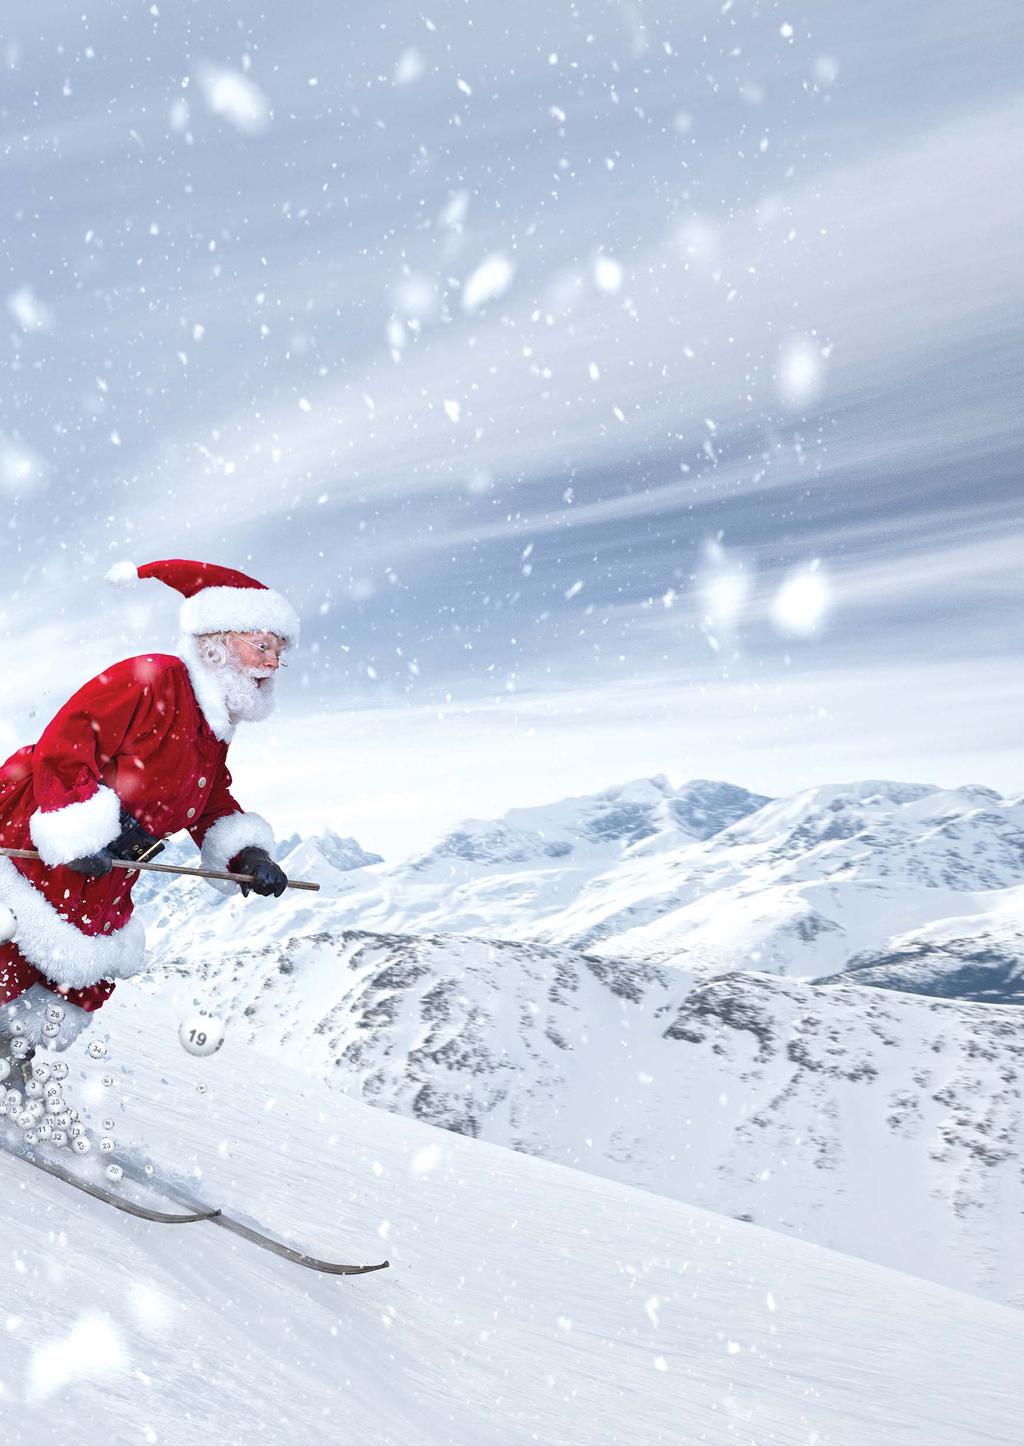 LOTTO Service aktuell Nikolaus-Sonderauslosung im EXTRA-Weihnachtsgeld: 400 x 10.000 Euro Traditionell schneit alle Jahre wieder eine bundesweite EXTRAPOT-Sonderauslosung zum Nikolaustag ins Haus.